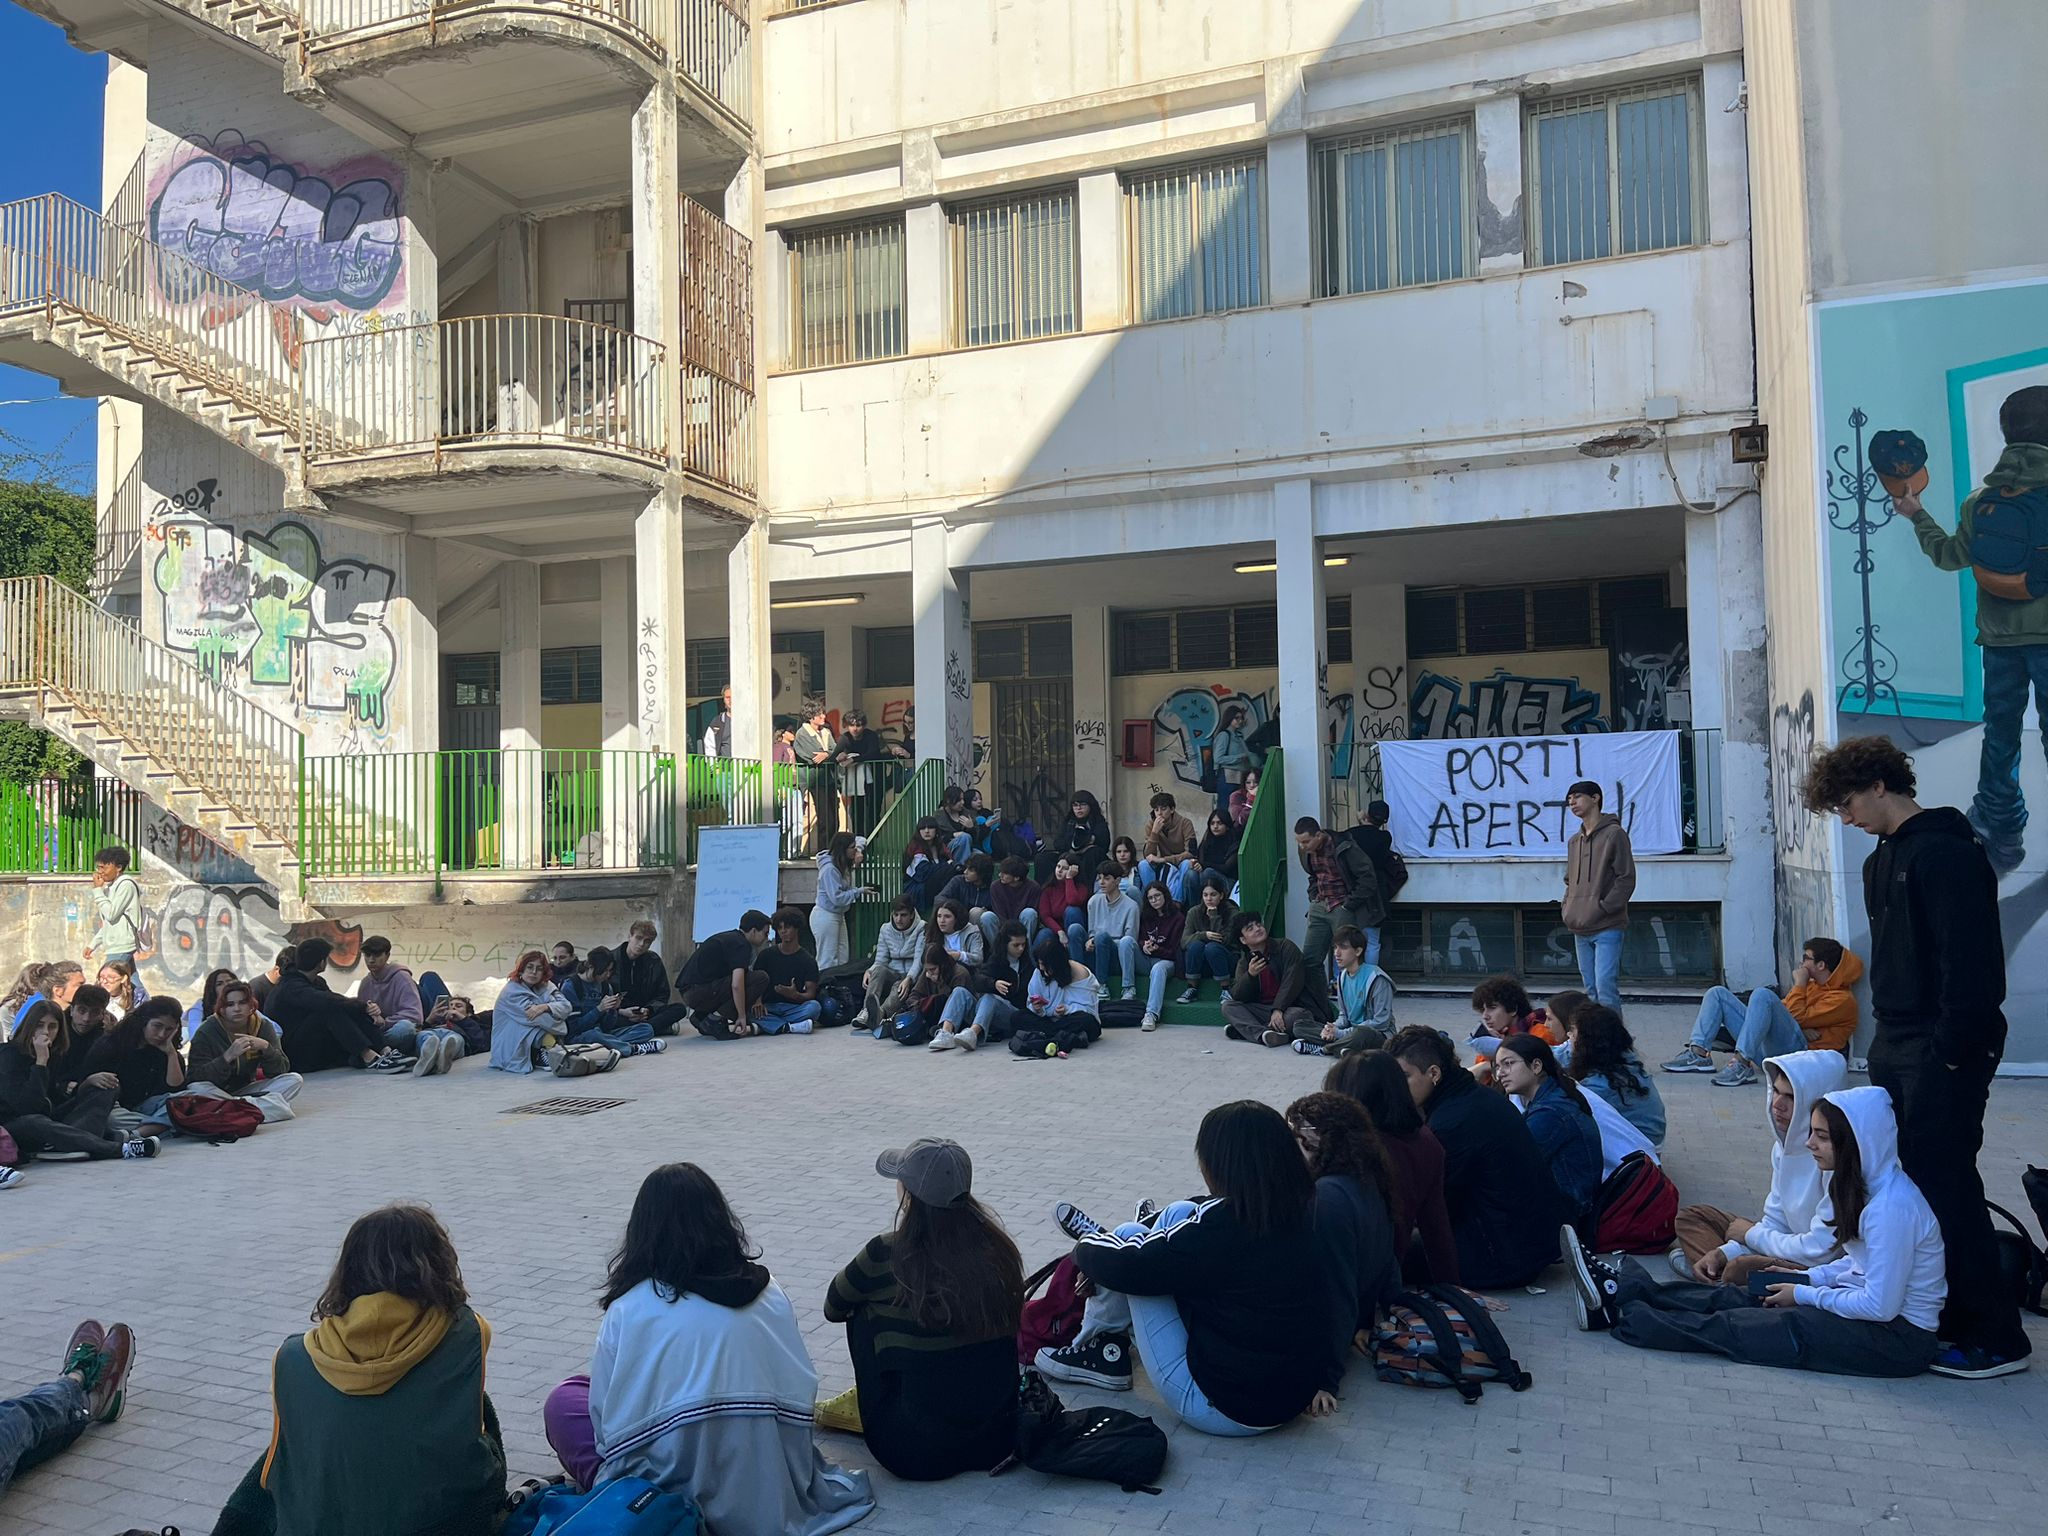 Studenti dello Spedalieri solidali con i migranti bloccati al porto di Catania: “Chiediamo umanità”